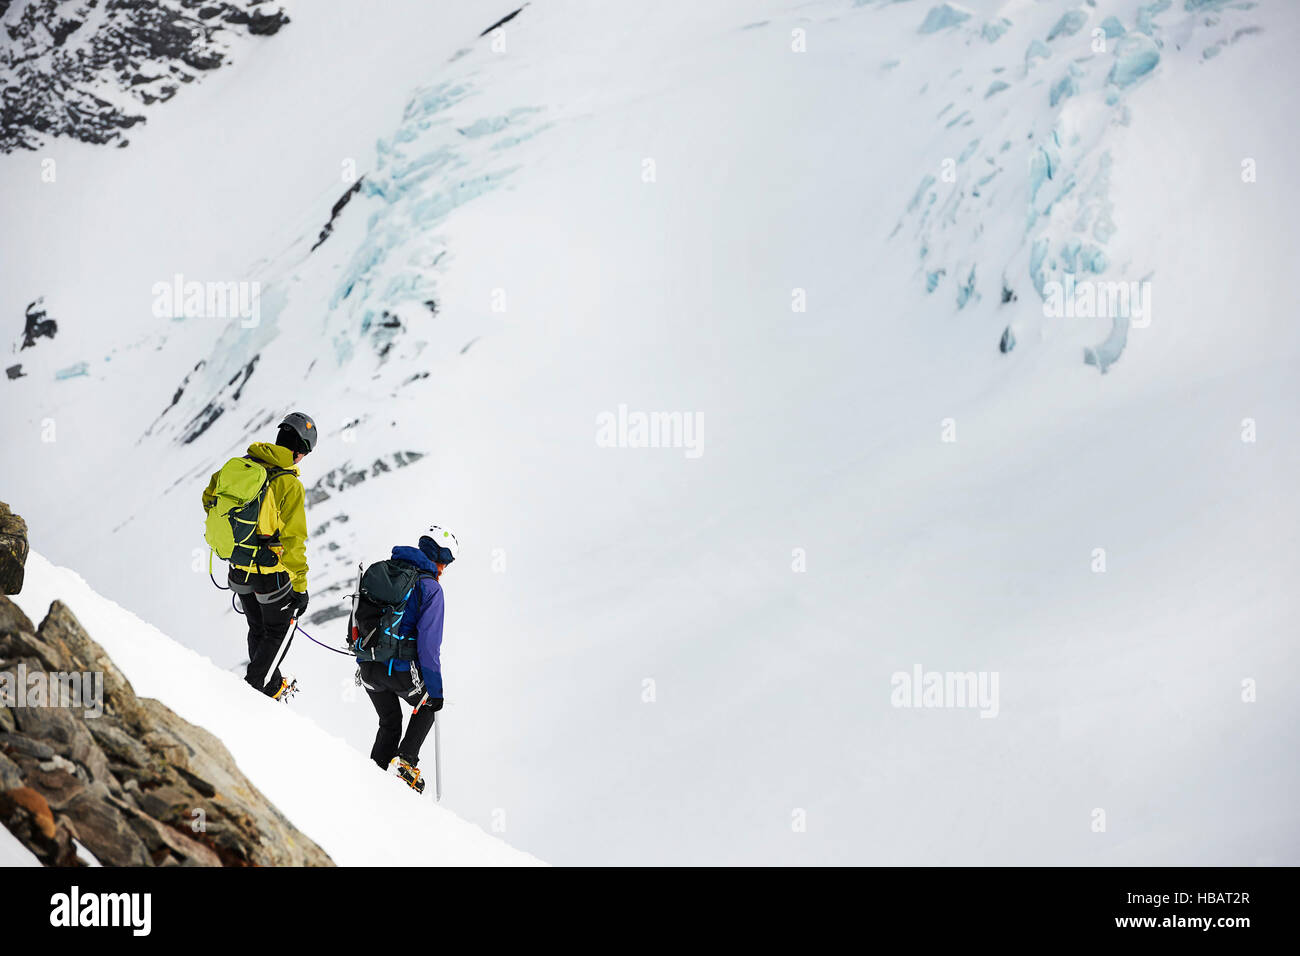 Mountaineers ski touring on snow-covered mountain, Saas Fee, Switzerland Stock Photo